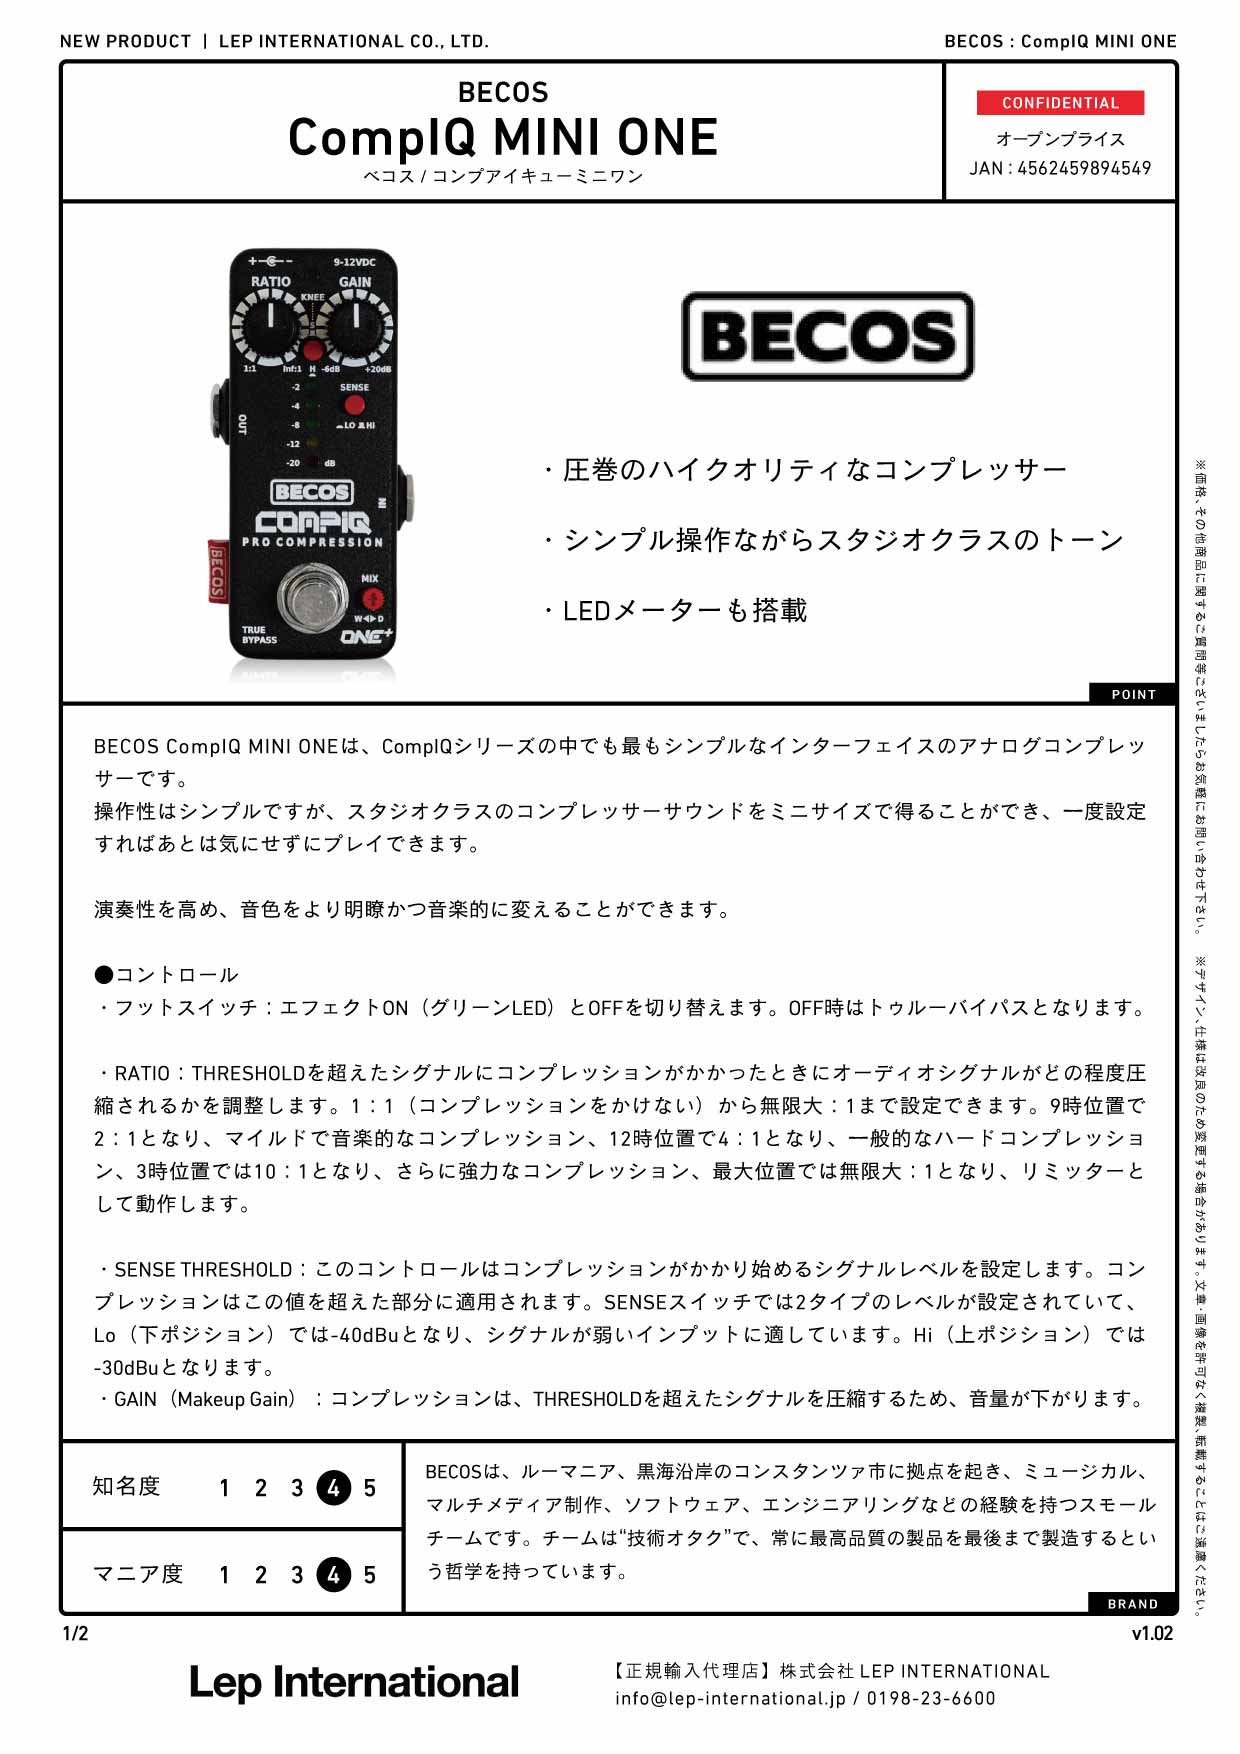 BECOS / CompIQ MINI ONE